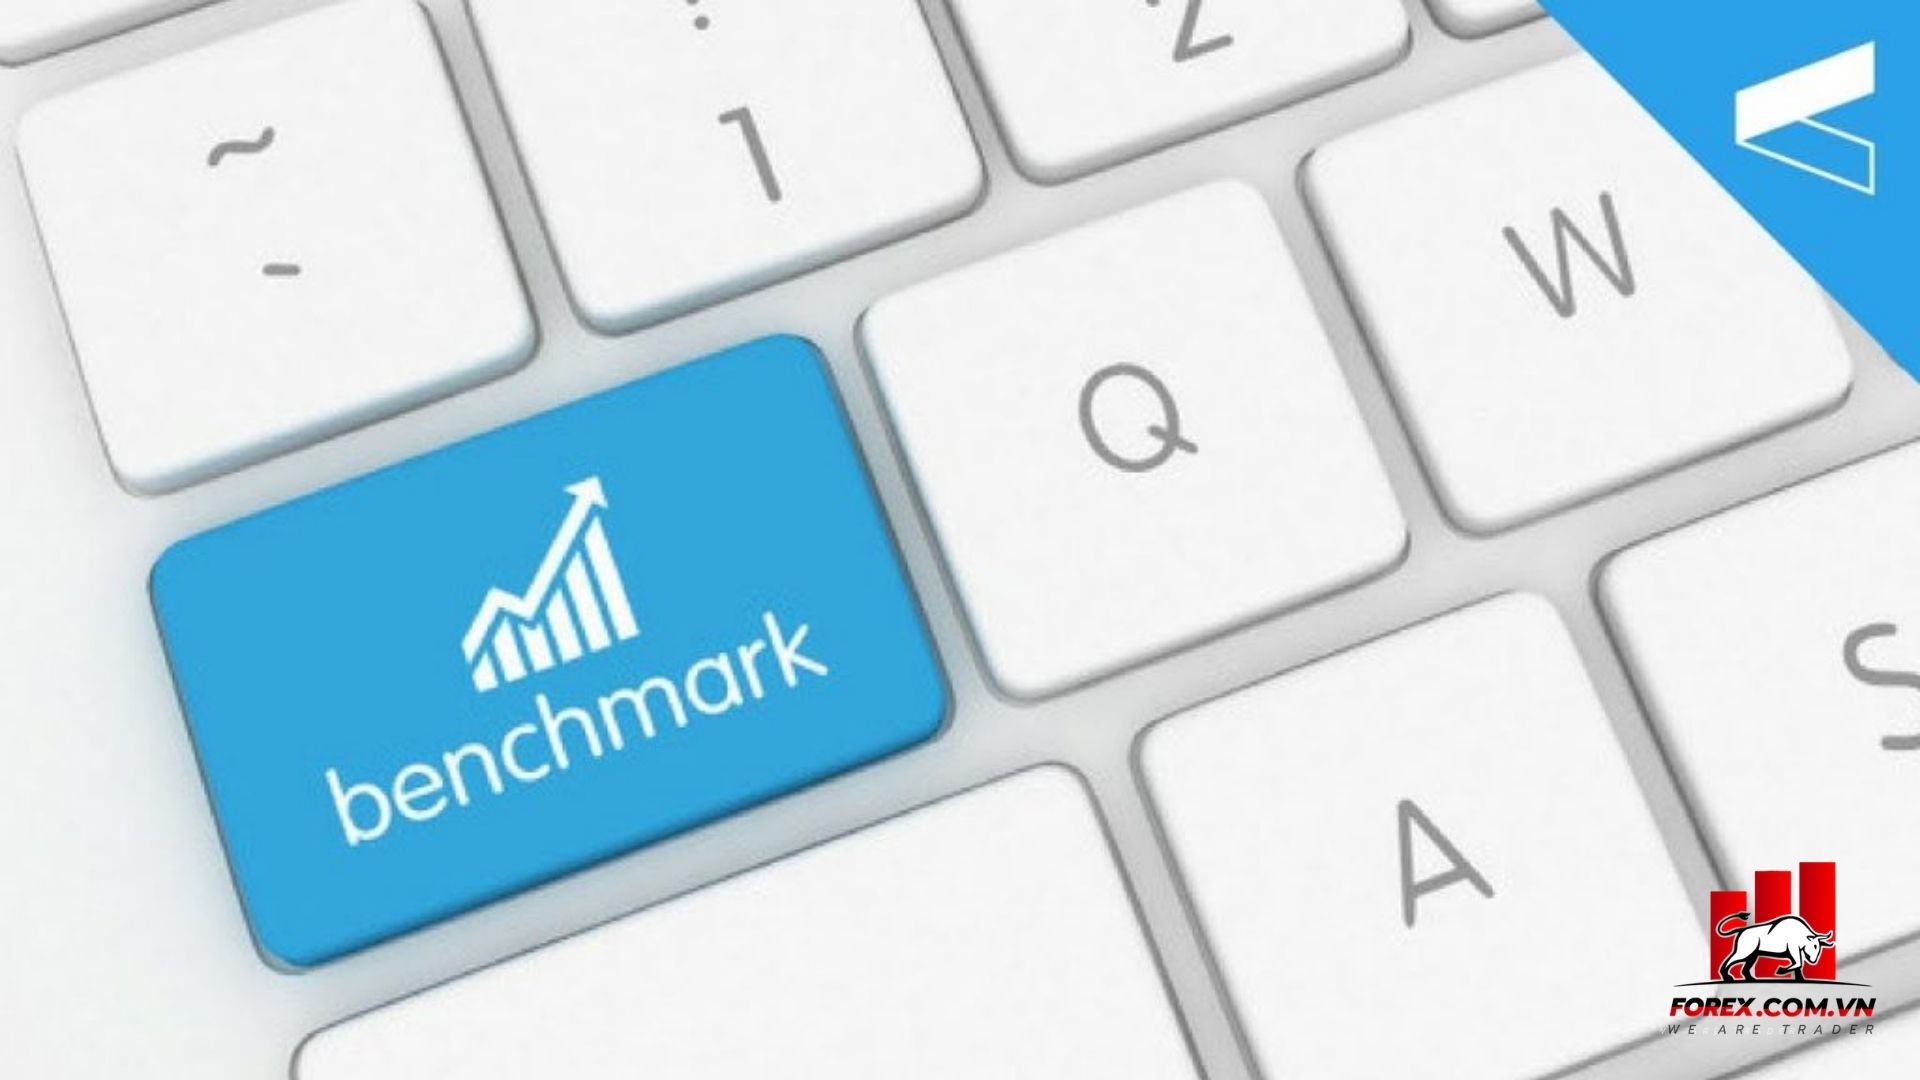 Benchmark là gì? Ý nghĩa điểm định chuẩn trong thị trường Forex